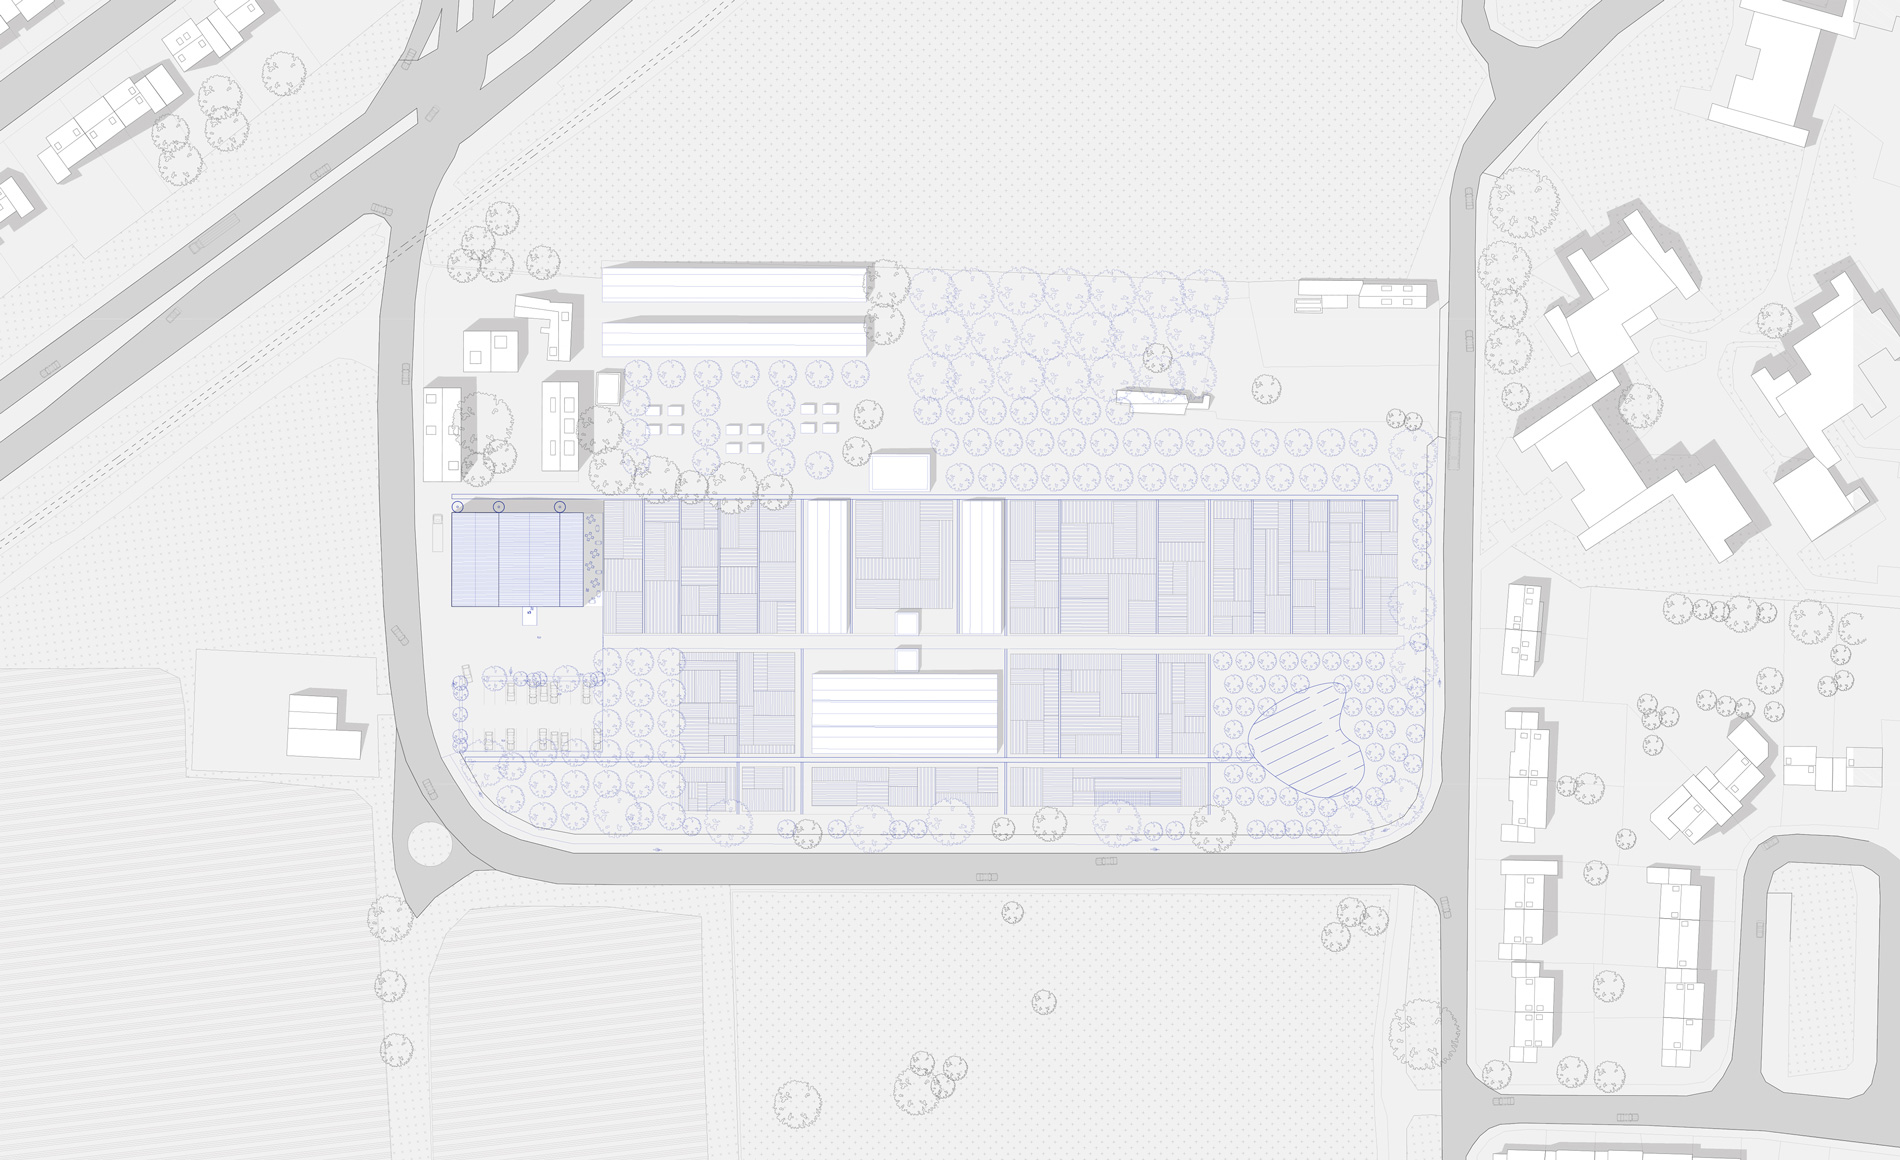 Plan masse projet d'une ferme urbaine entre Coudekerque Branche et Téteghem